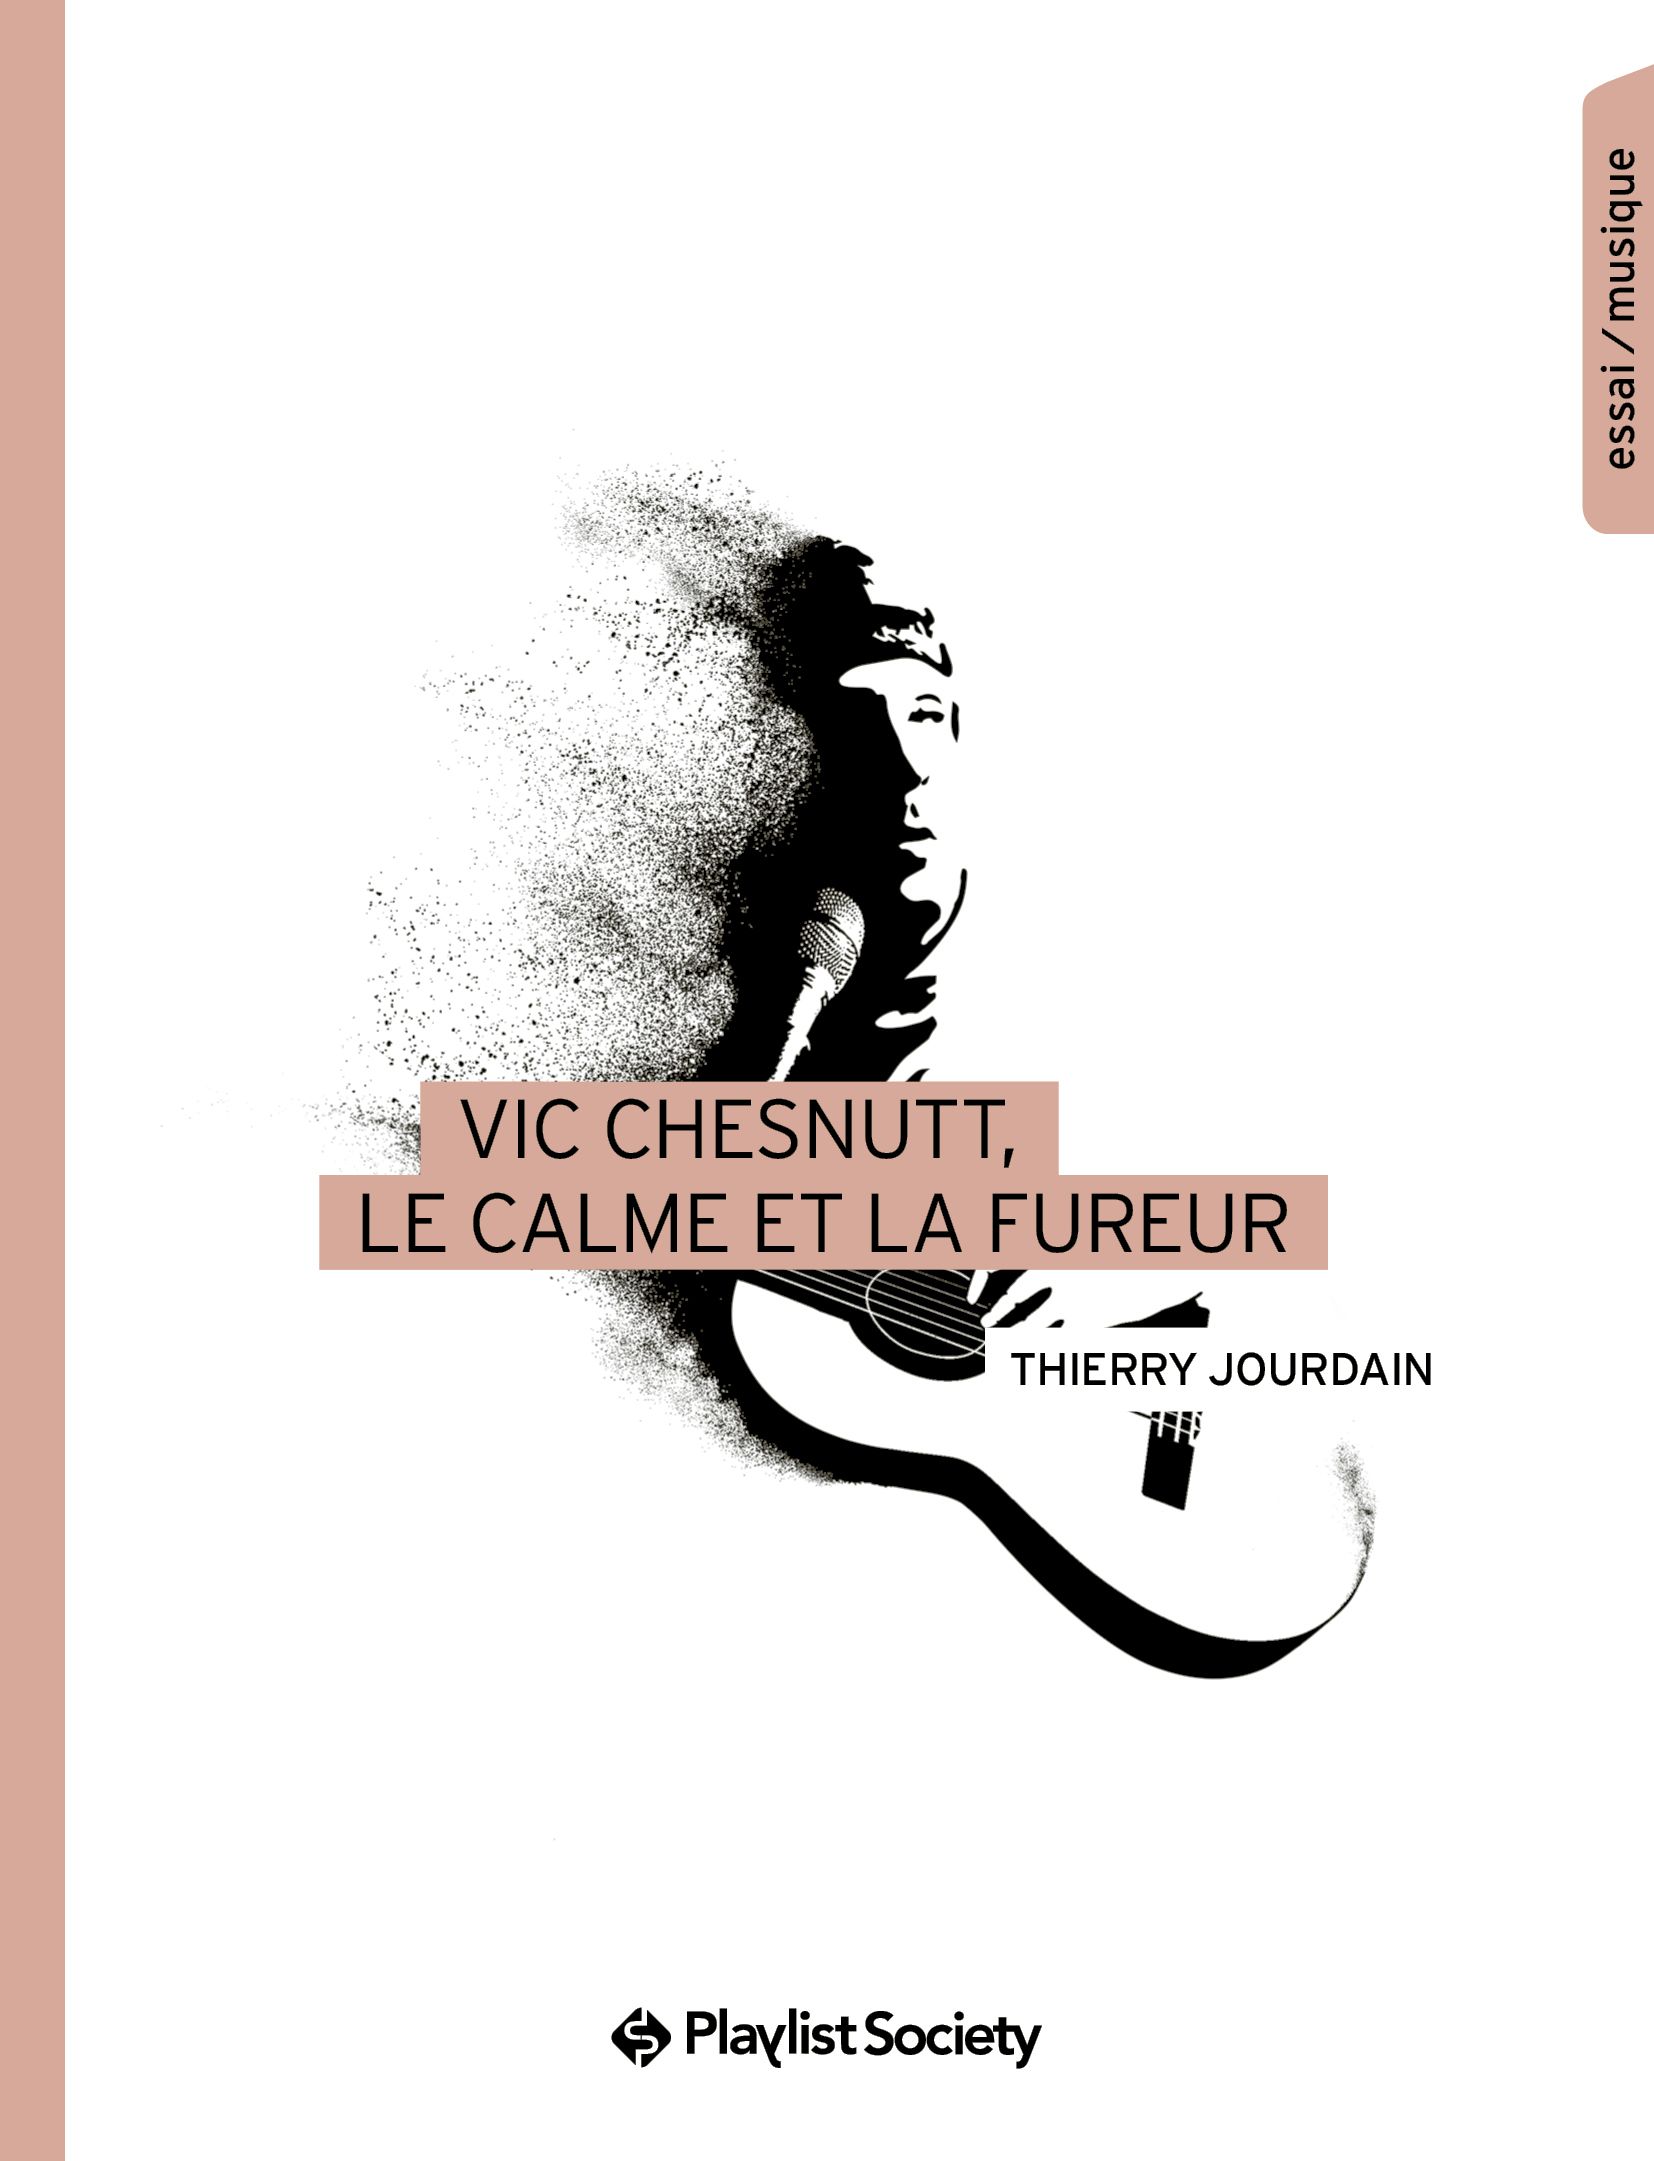 Vic Chesnutt, le calme et la fureur, Thierry Jourdain